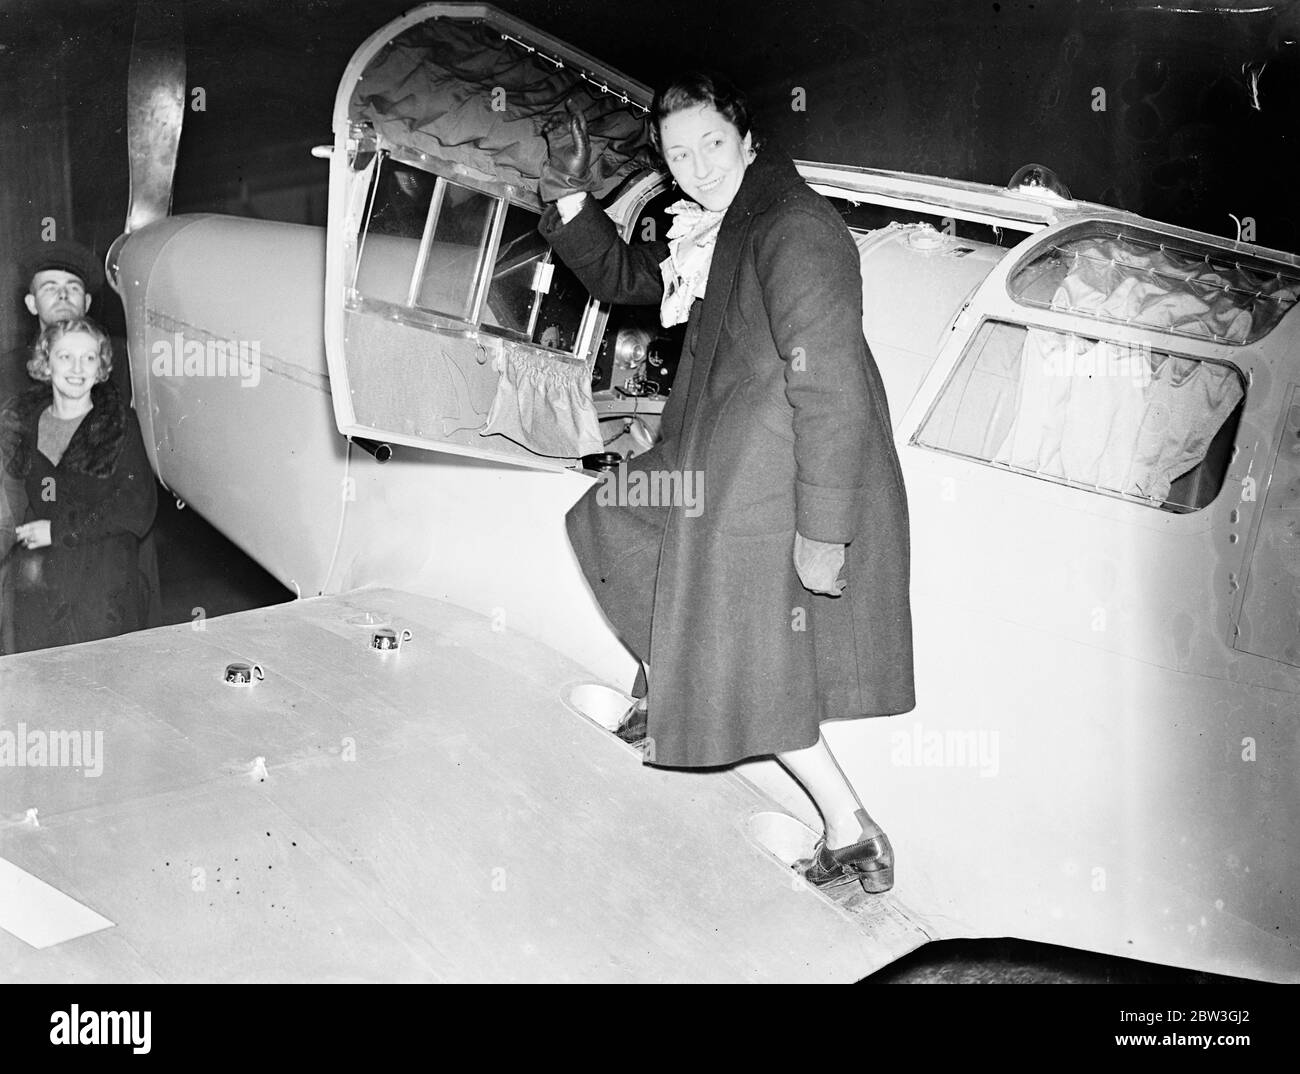 Amy Mollison commence un vol secret pour le Cap . Amy Mollison a fait la plus grande tentative de sa carrière de pilote lorsqu'elle a quitté l'aérodrome de Gravesend à 5 . 40 heures vendredi ( aujourd'hui ) pour voler seul au cap et briser le record de trois jours , 17 heures mis en place par Tommy Rose il ya quelques semaines . Son secret avait été étroitement gardé jusqu'au dernier moment . Photos , Mme Amy Mollison entrant dans son avion au début du vol . 3 avril 1936 Banque D'Images